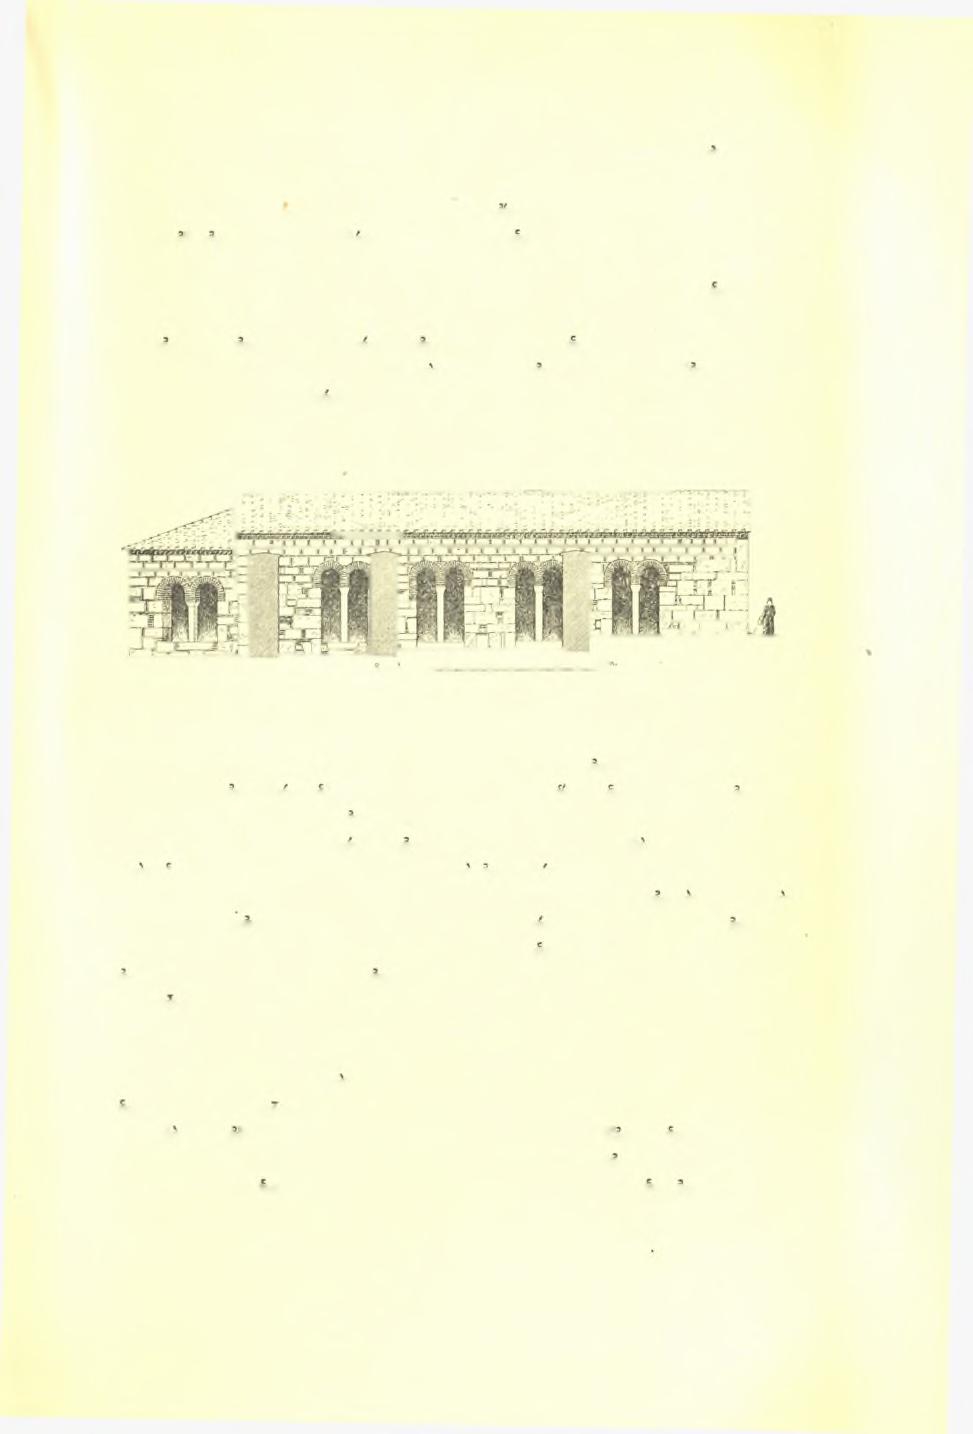 Ά. Κ. Όρλάνδου: Άναστηλωτικαί έργασίαι τής Άρχ. 'Εταιρείας κατά το 1957 151 ή δυτική δψις τοΰ κτηρίου μέ τό τρίβηλον άνοιγμά κάτω (πίν.